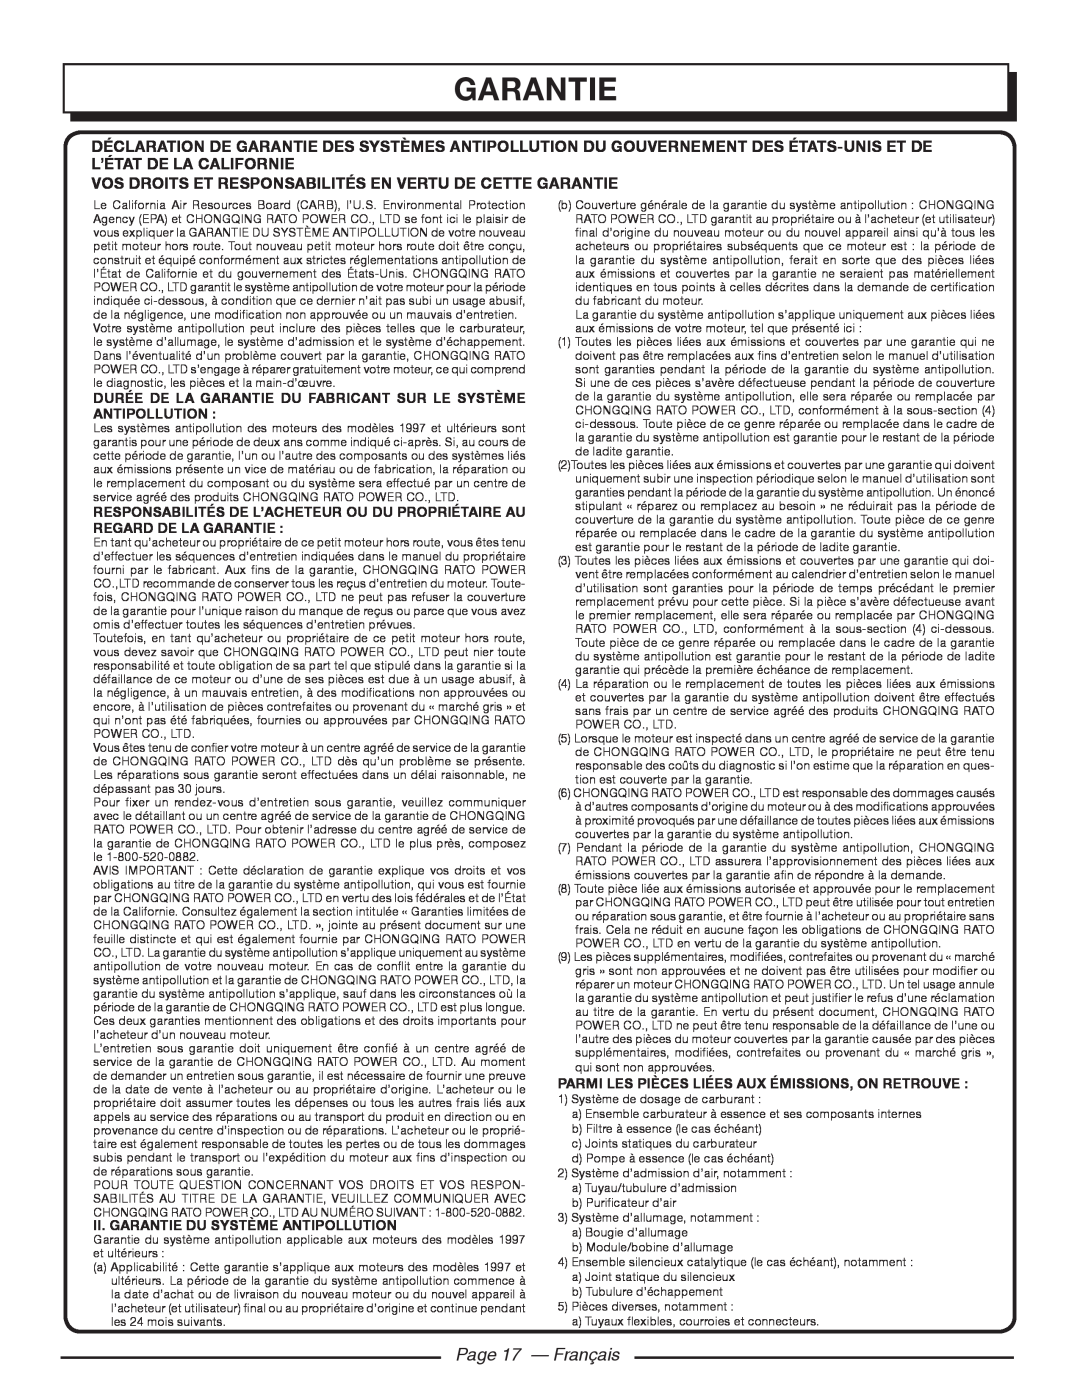 Homelite UT80977, UT80546 Page 17 - Français, Vos Droits Et Responsabilités En Vertu De Cette Garantie 